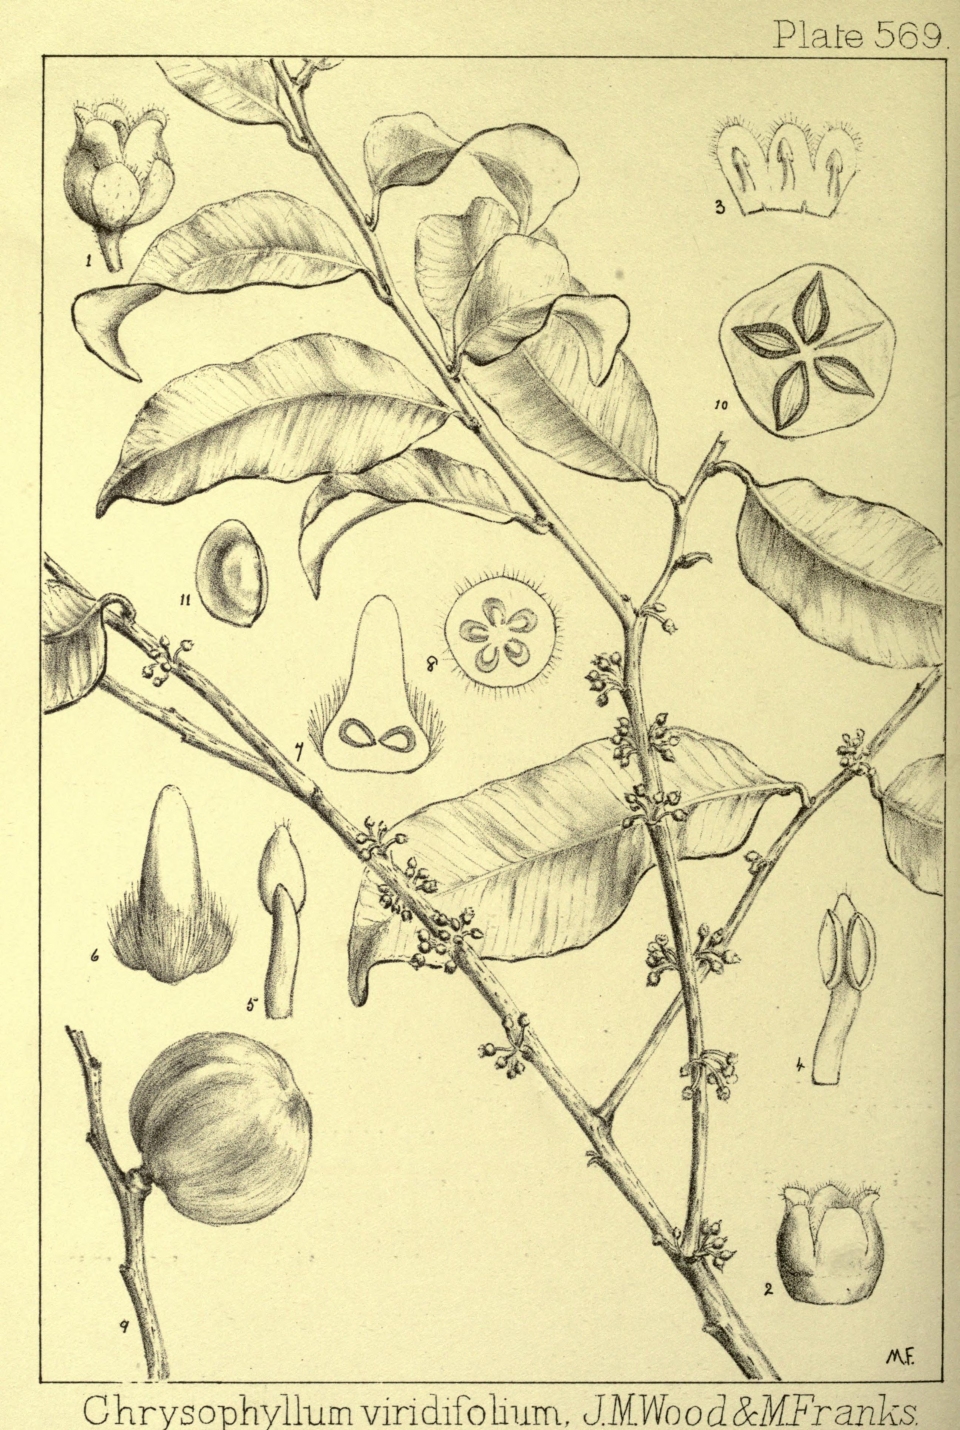 Chrysophyllum viridifolium